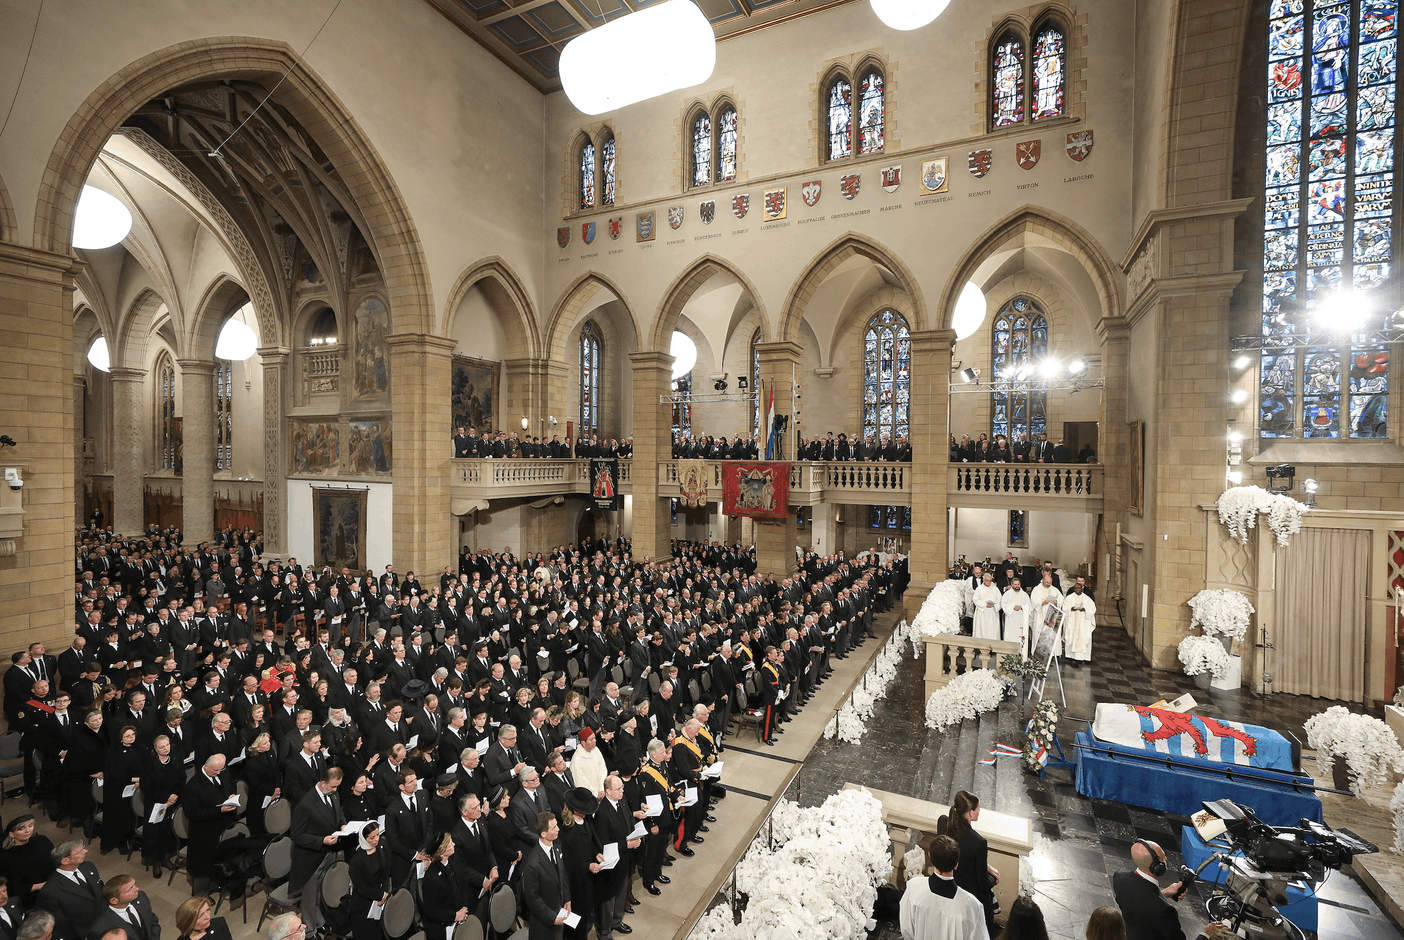 La cathédrale Notre-Dame réunissait de nombreux dignitaires étrangers. (Photo: Guy Wolff / Luxemburger Wort / Photo Pool)